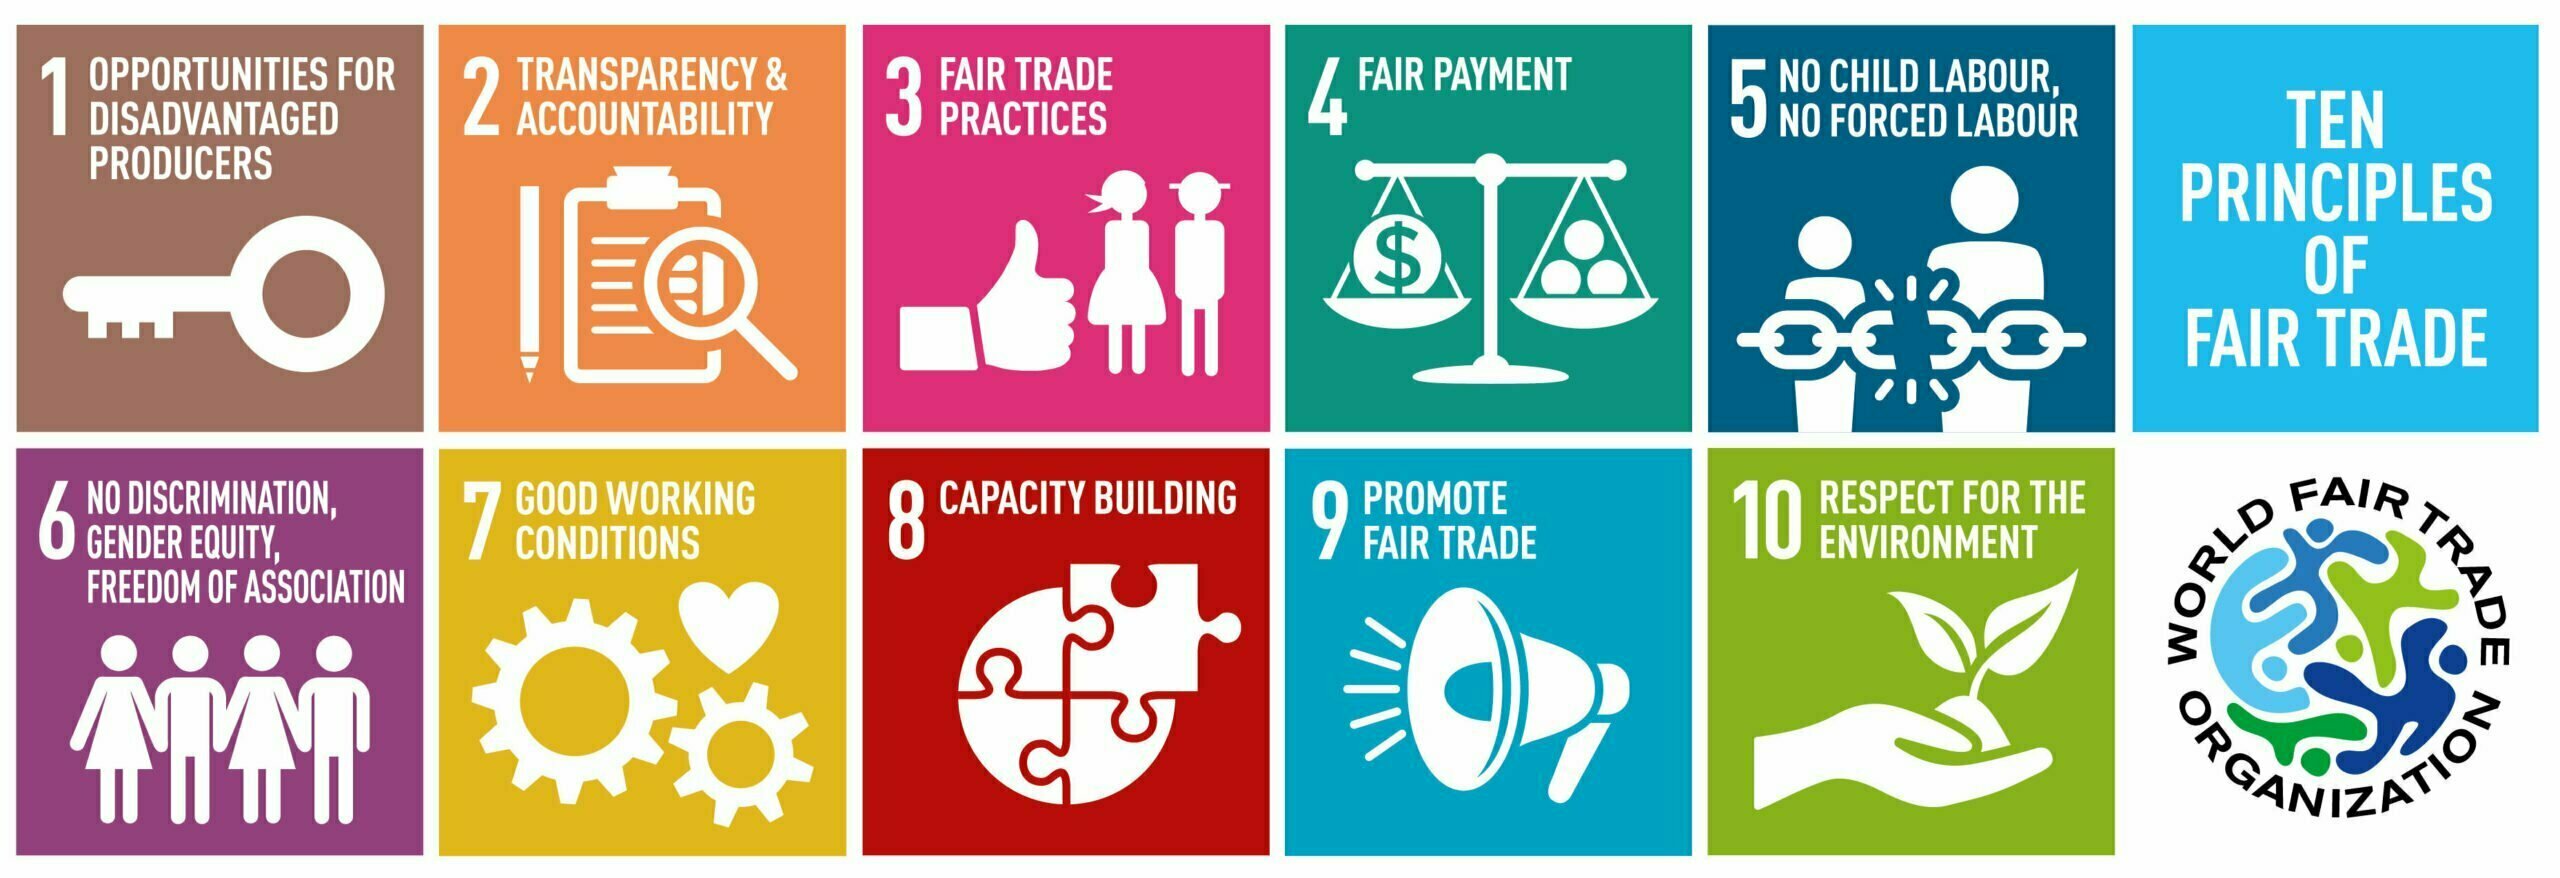 Ethical marketing fair trade principles